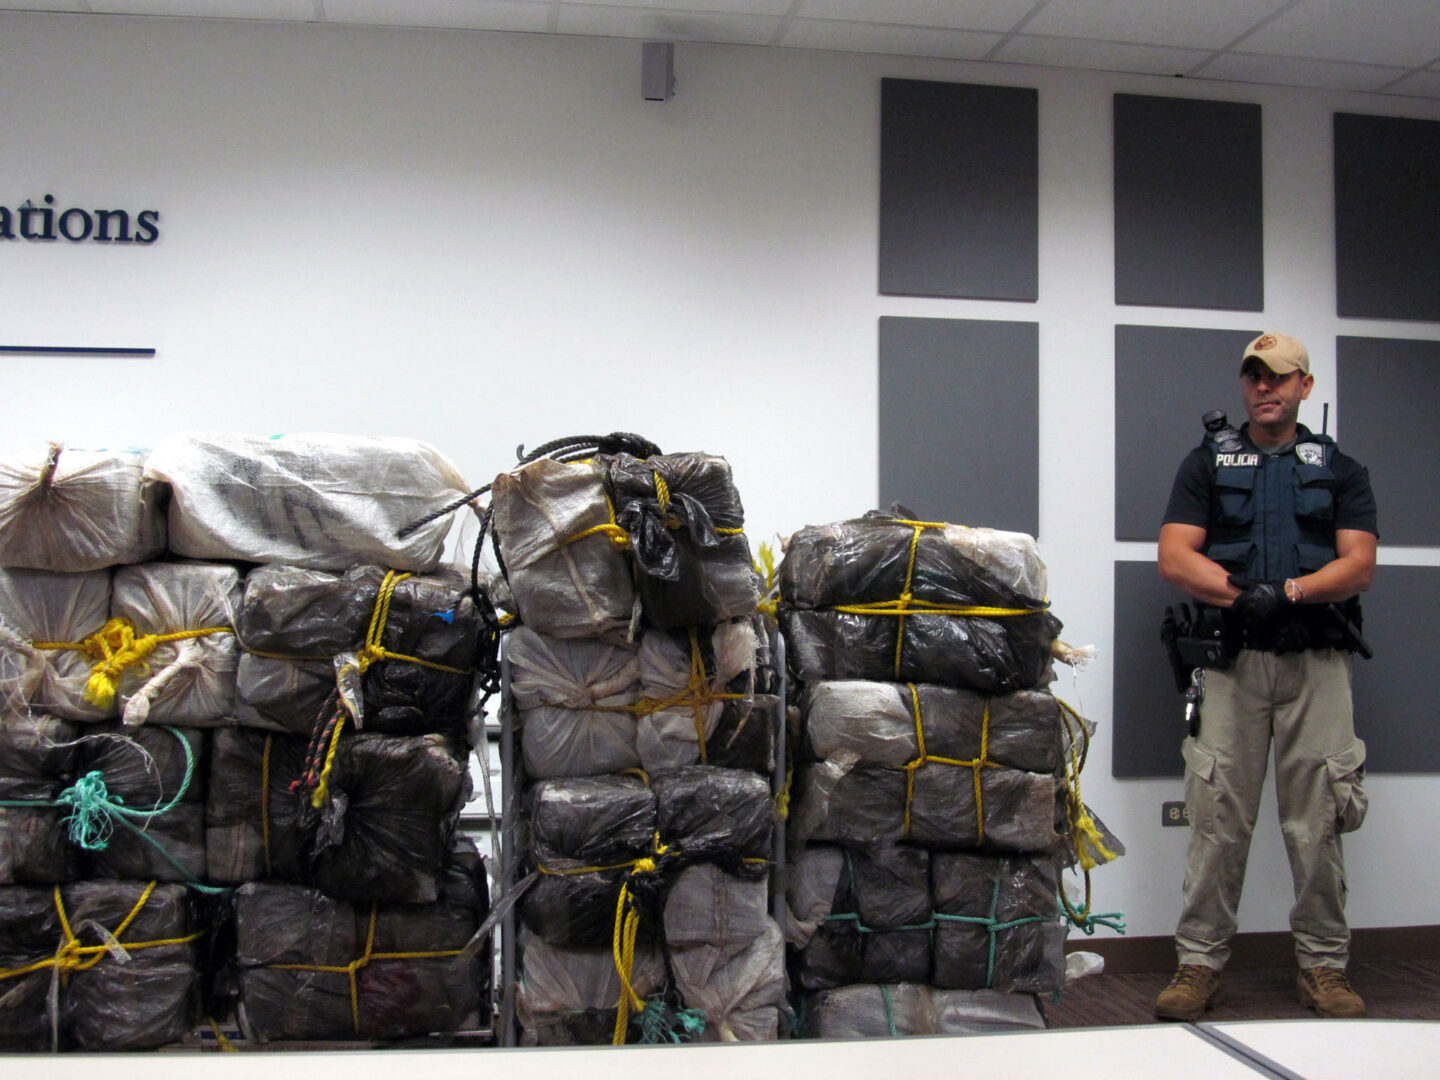 Incautan 182 kilos de cocaína y detienen a dos contrabandistas en aguas de Puerto Rico